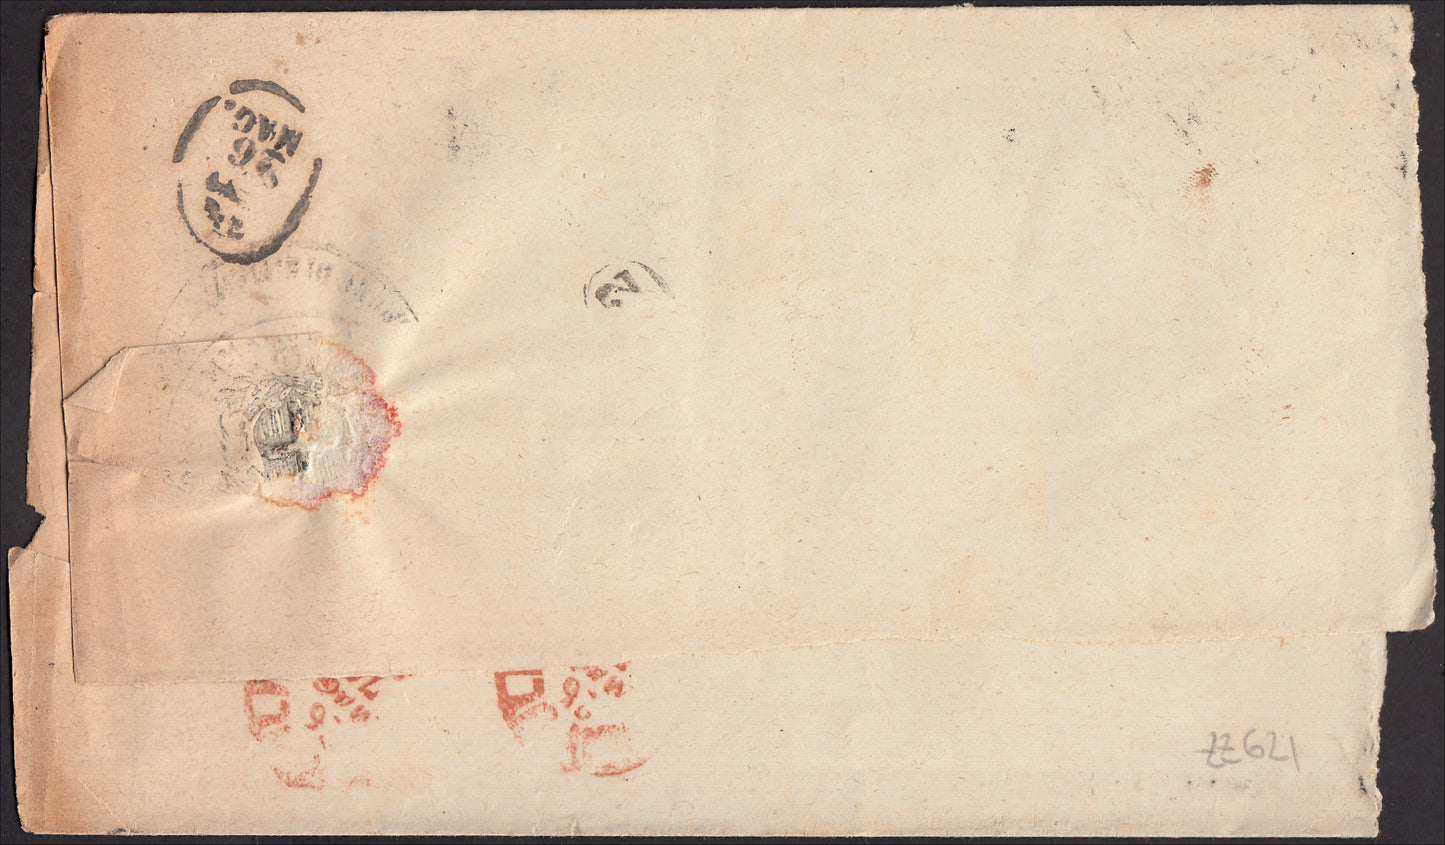 ZZ621 - 1876 - Lettera spedita da S. Martino Valle Caudina per Napoli 25/5/76 affrancata con c. 20 azzurro coppia verticale (T26)